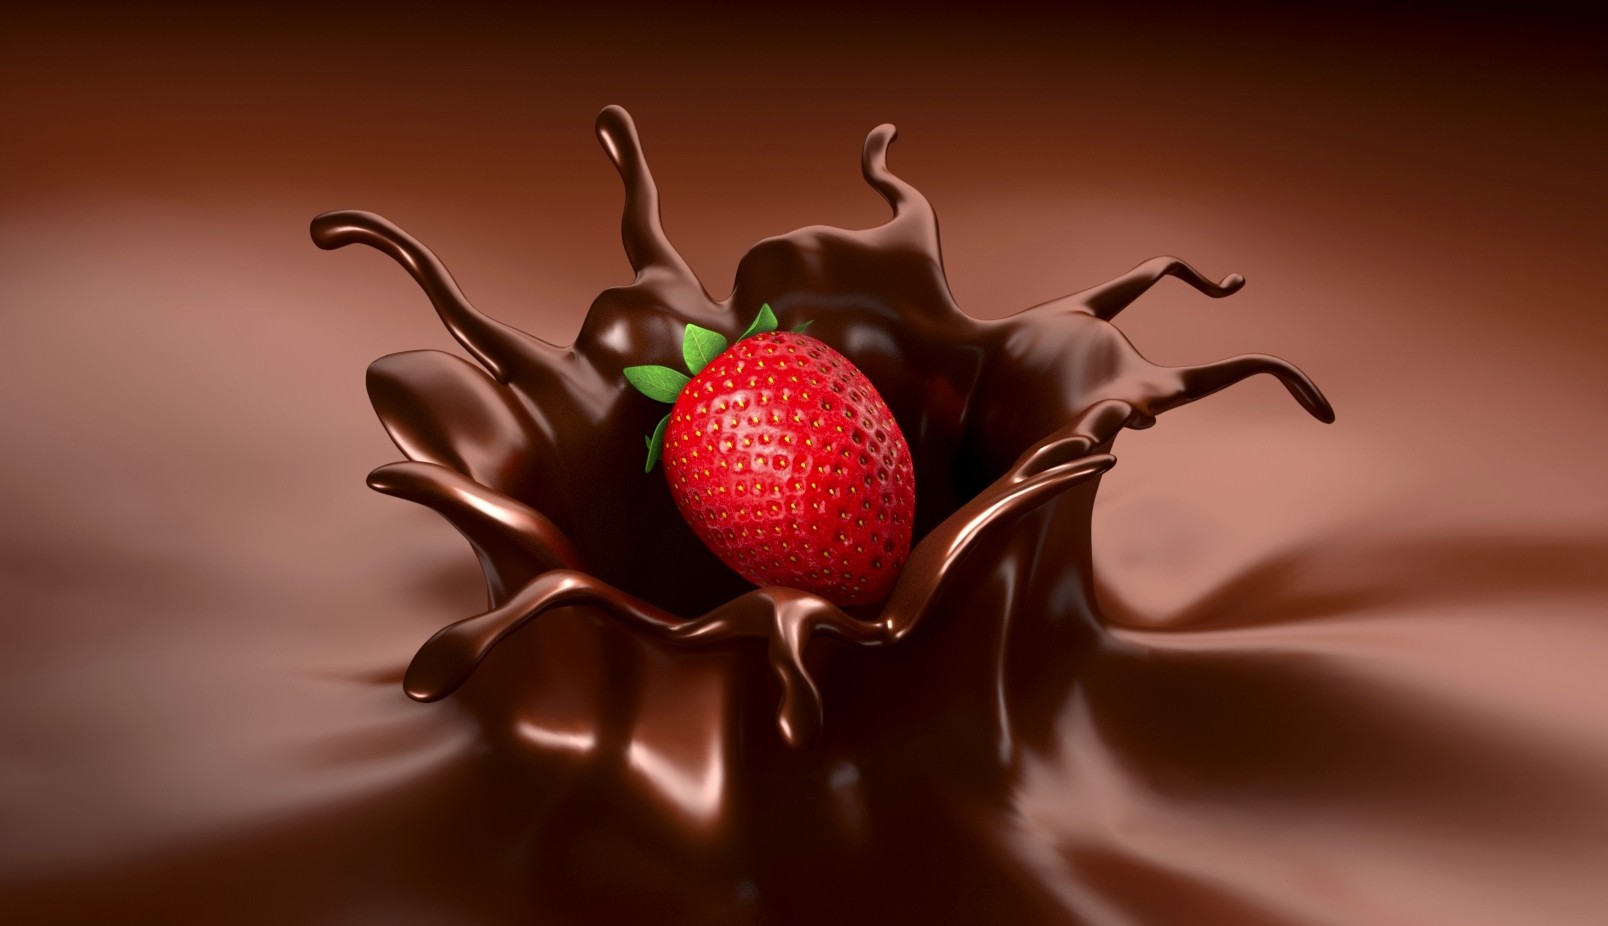 ArtStation - Strawberry Chocolate Splash